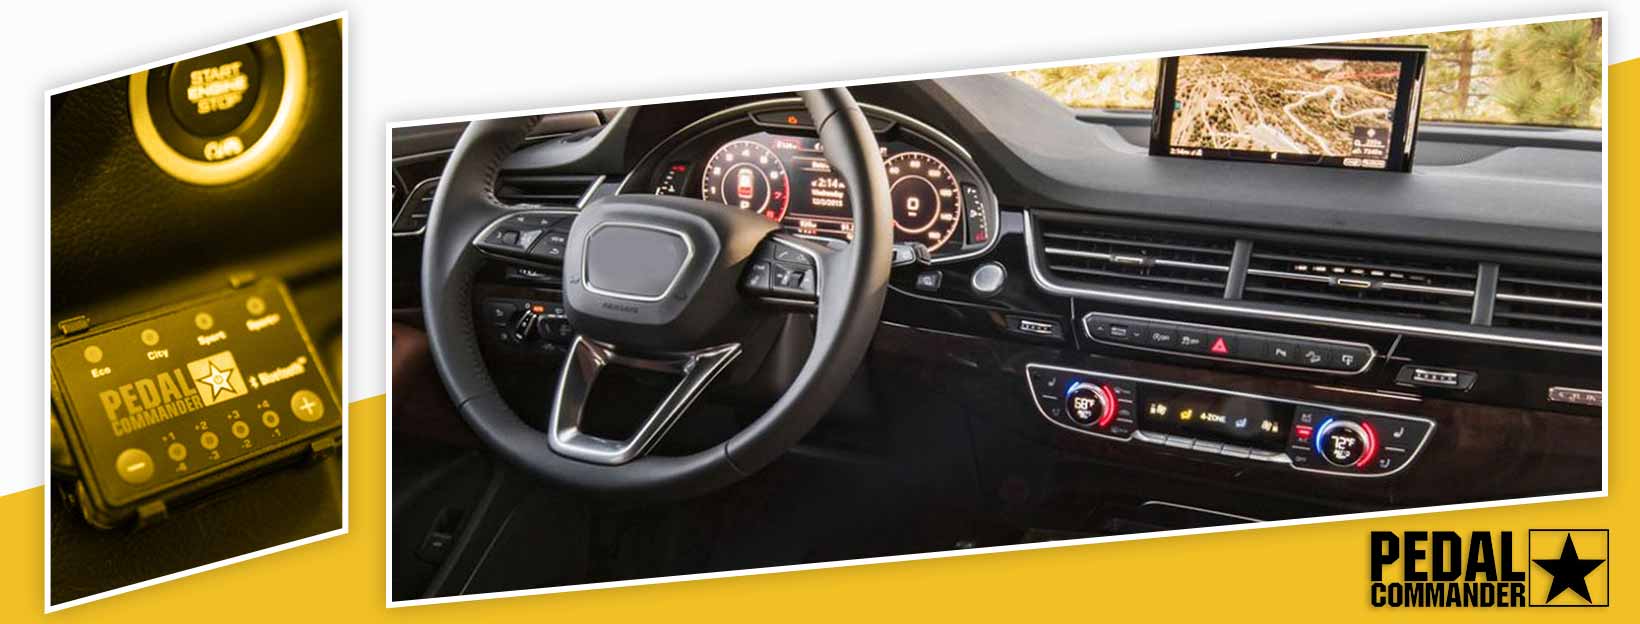 Pedal Commander for Audi Q7 - interior